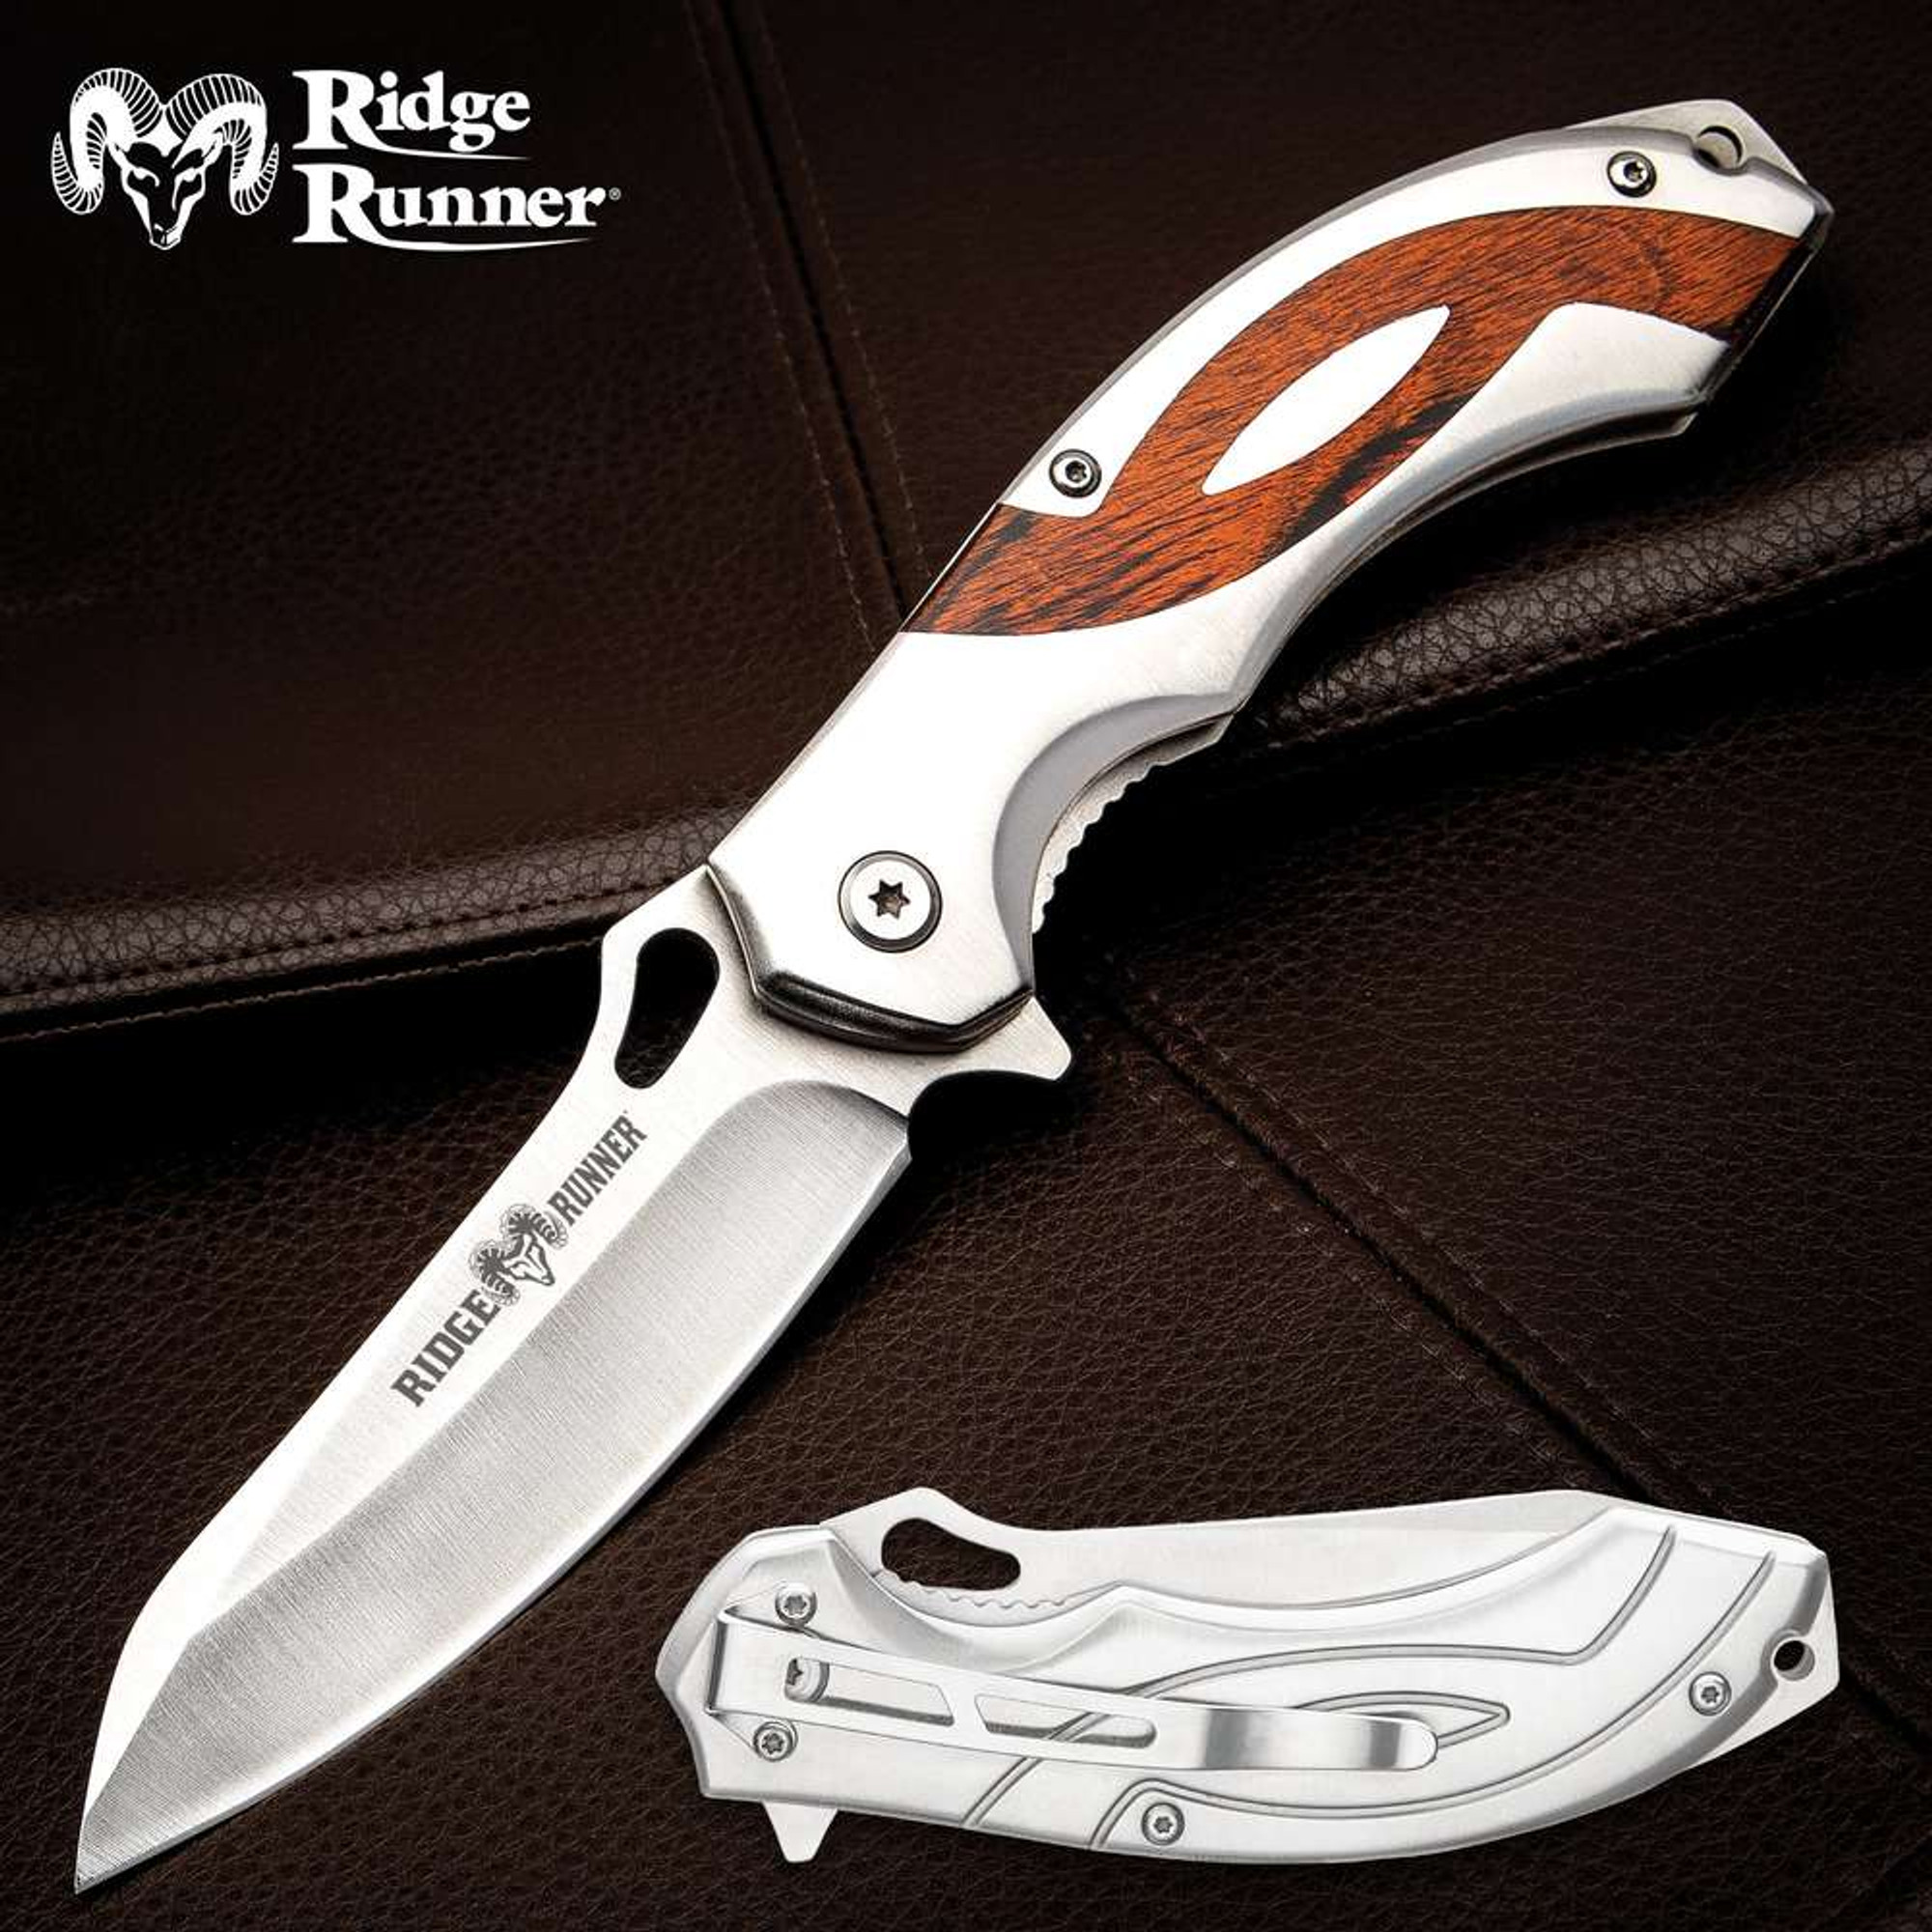 Ridge Runner Desk Jockey Pocket Knife